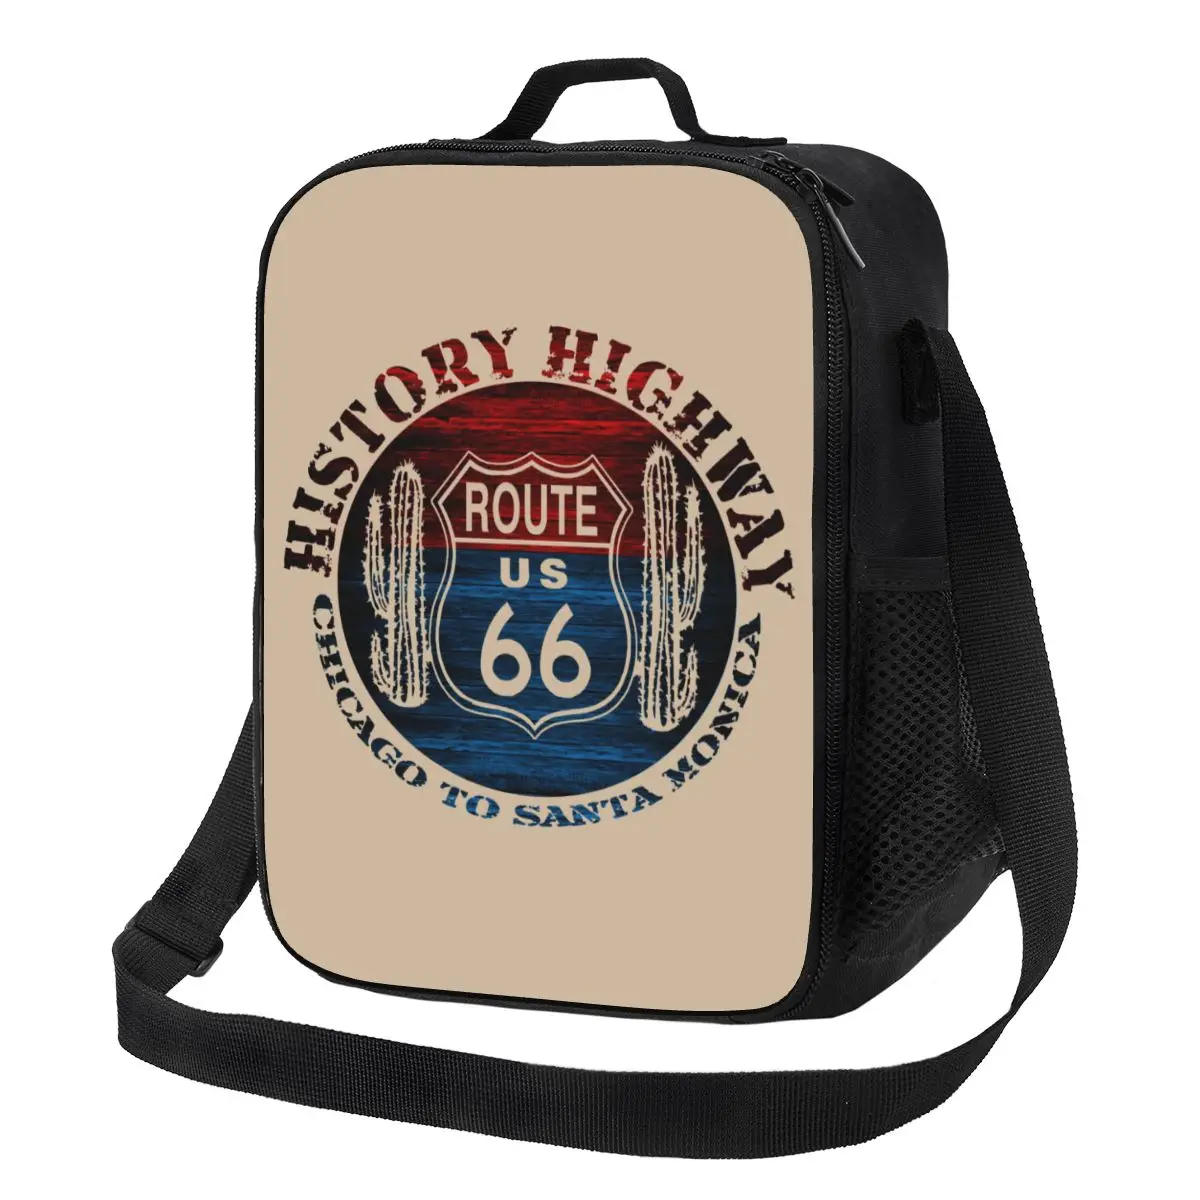 Route 66 America Road Vintage Trip Портативный ланч-бокс для многофункционального холодильника, сумка для ланча с термоизоляцией для еды, детская школьная